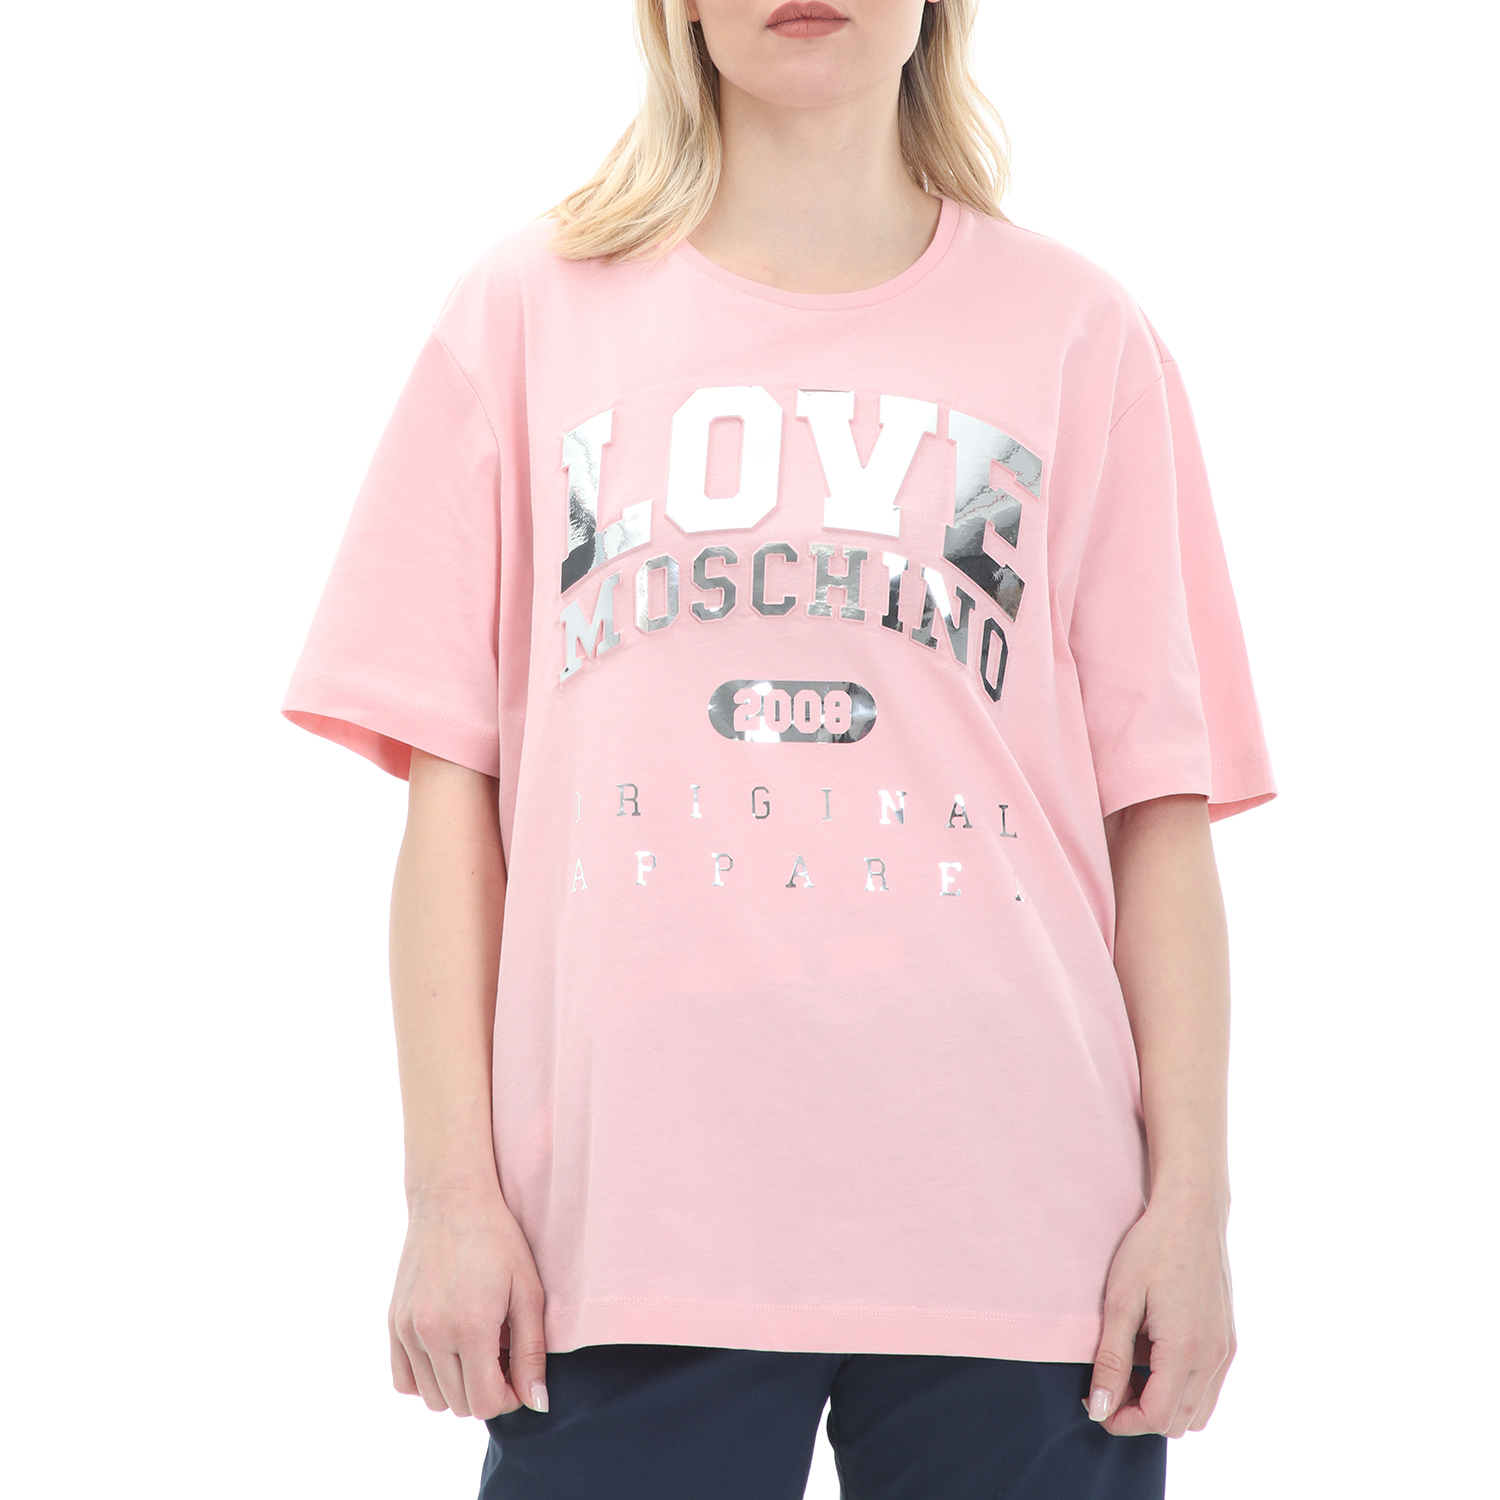 Γυναικεία/Ρούχα/Μπλούζες/Κοντομάνικες LOVE MOSCHINO - Γυναικεία μπλούζα LOVE MOSCHINO ροζ